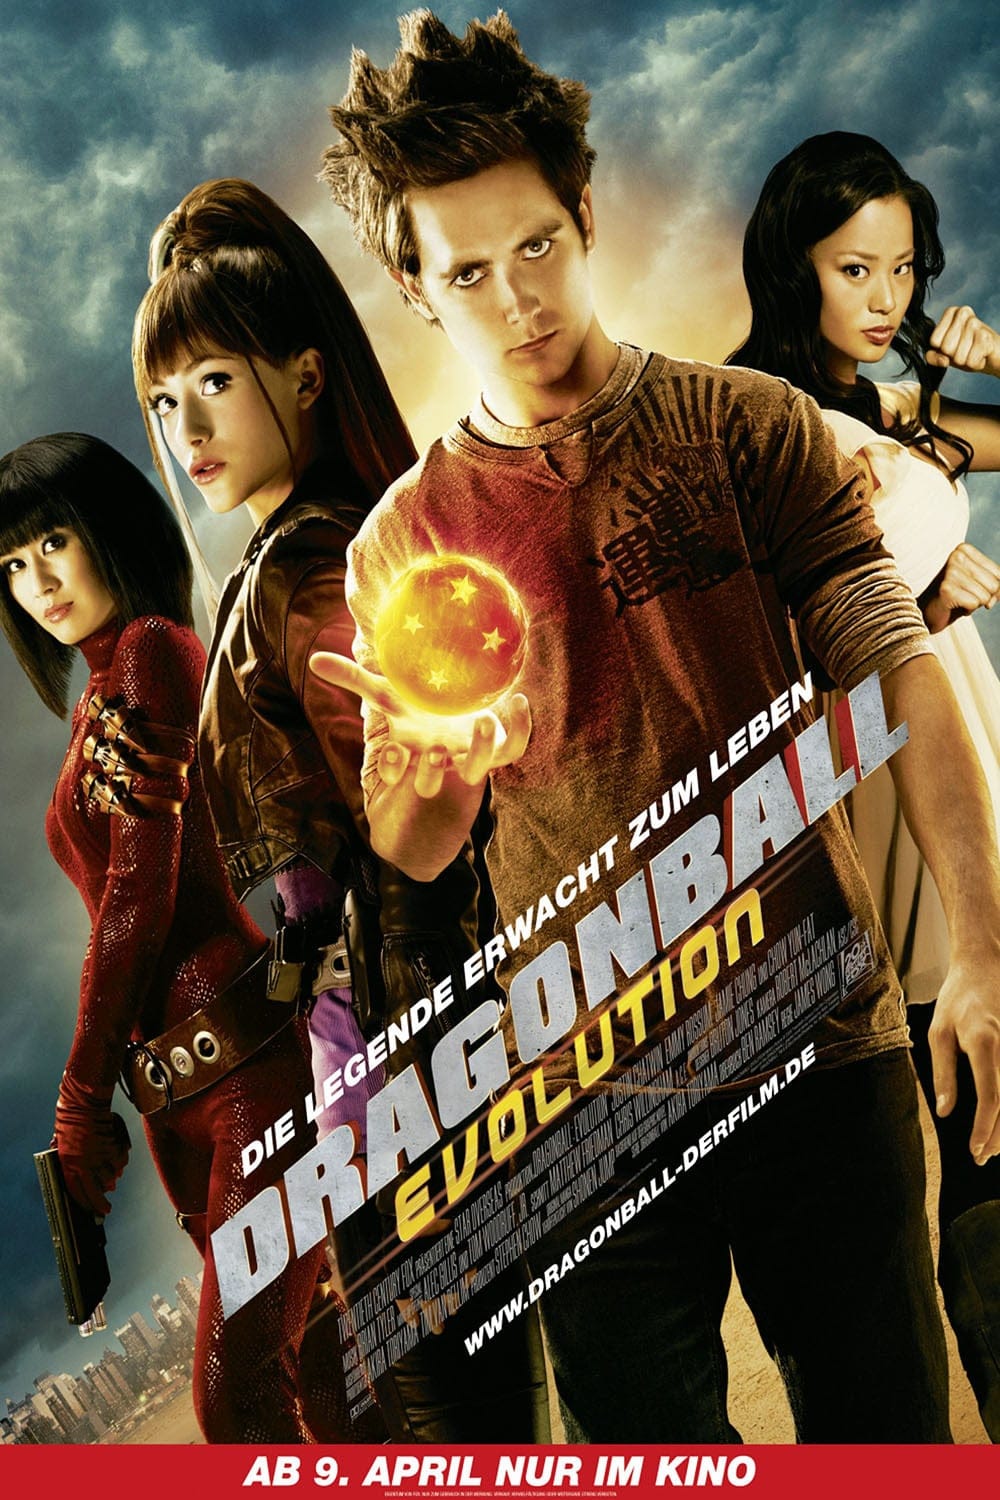 Plakat von "Dragonball Evolution"